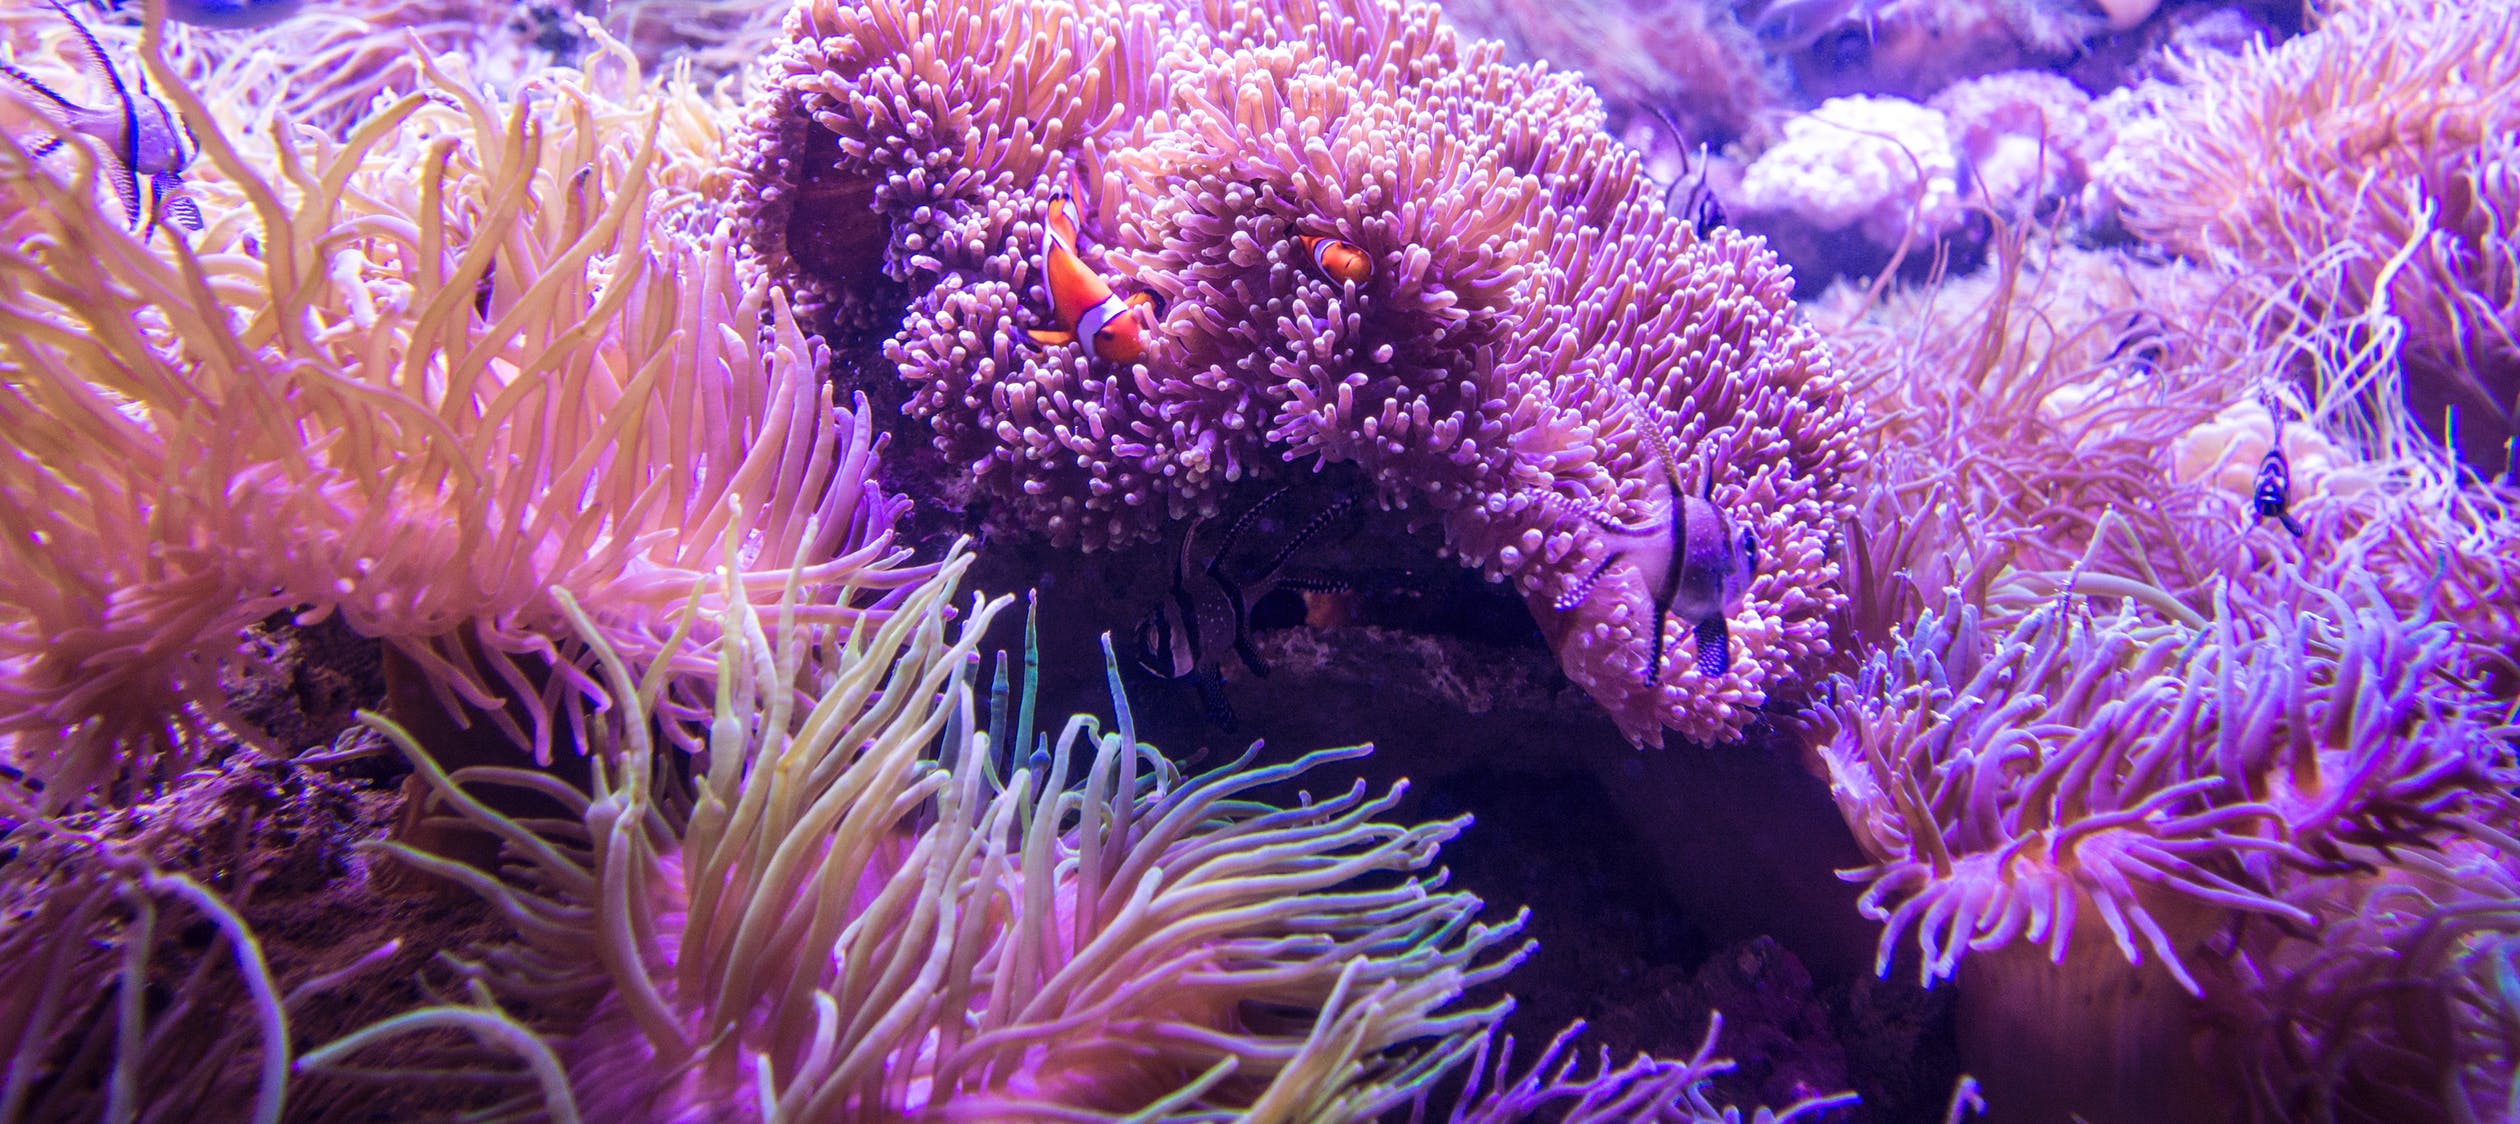 Ученые сообщили о скорой гибели кораллов Большого Барьерного рифа в Австралии